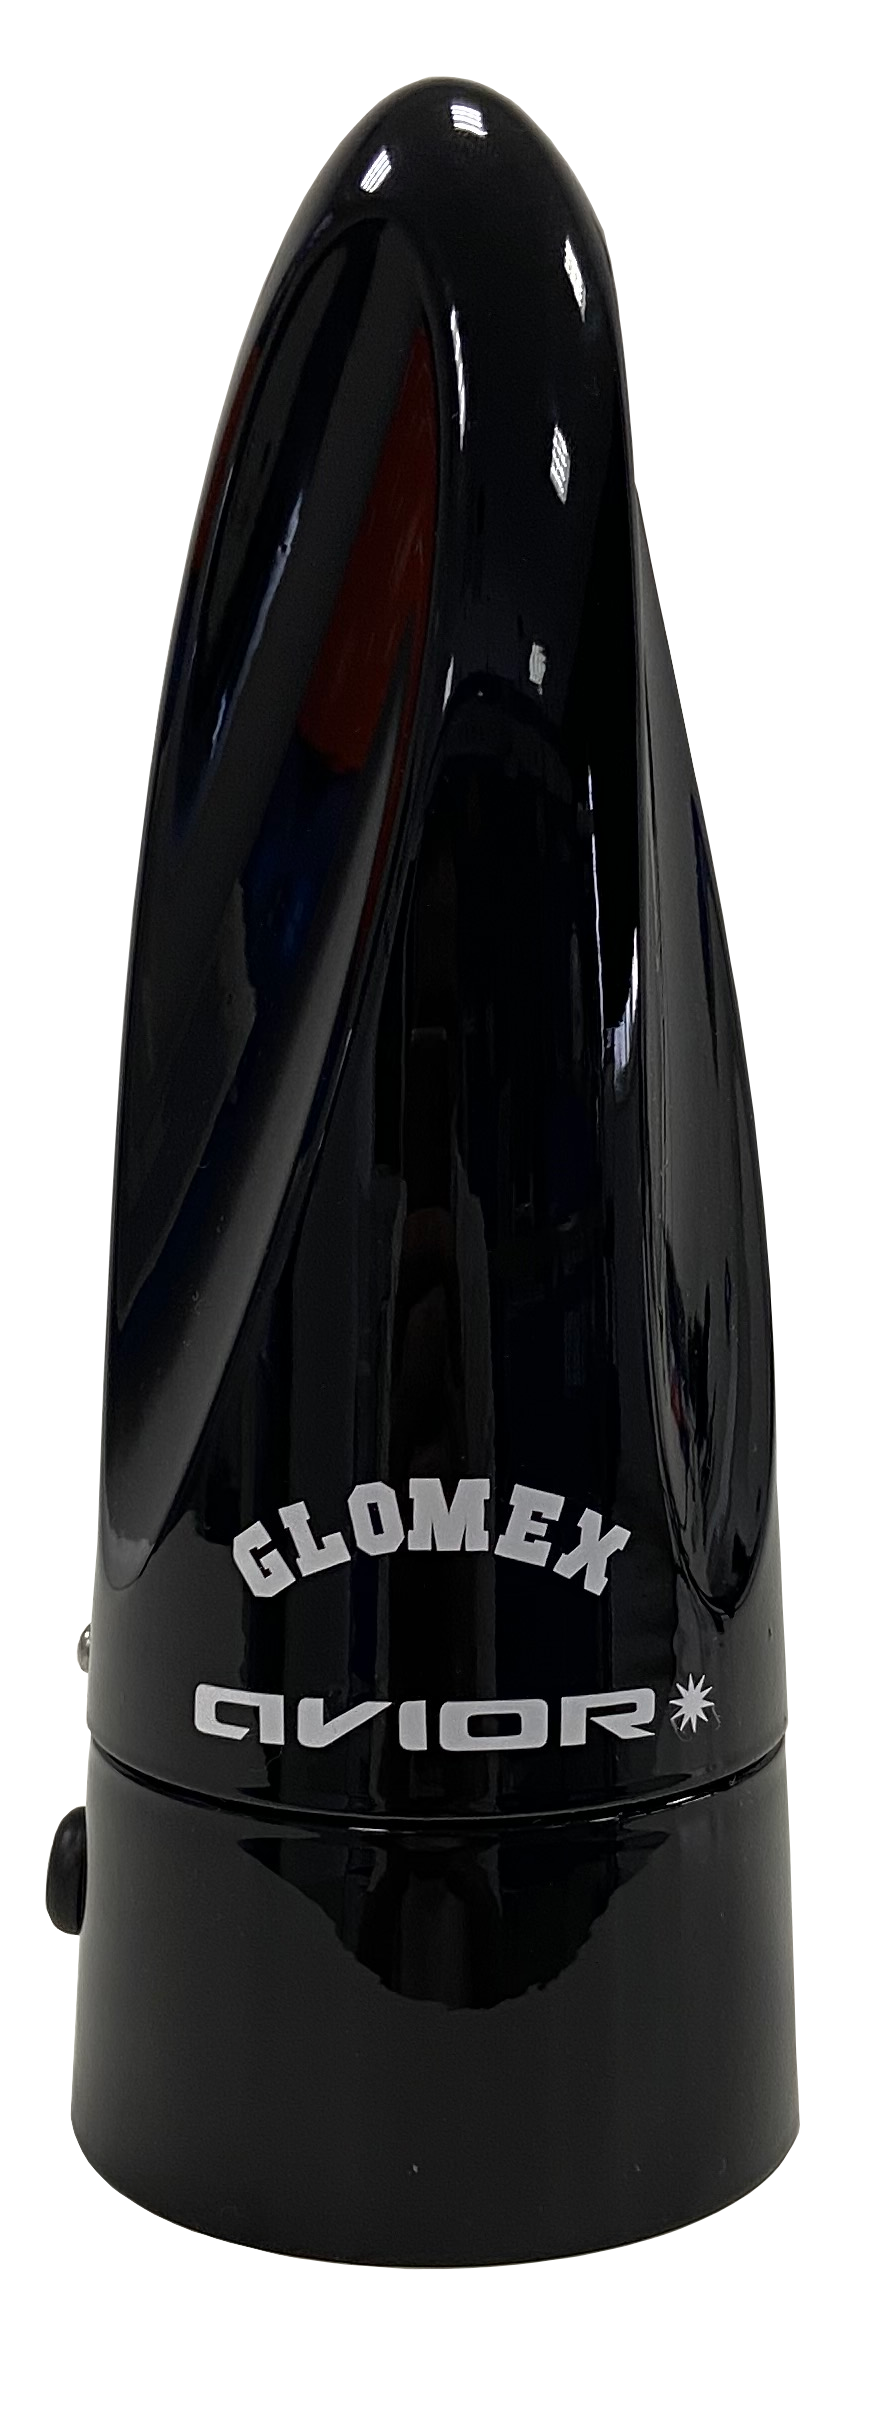 GLOMEX VT300 AVIOR schwarz, TV- und Radioantenne - neues Modell